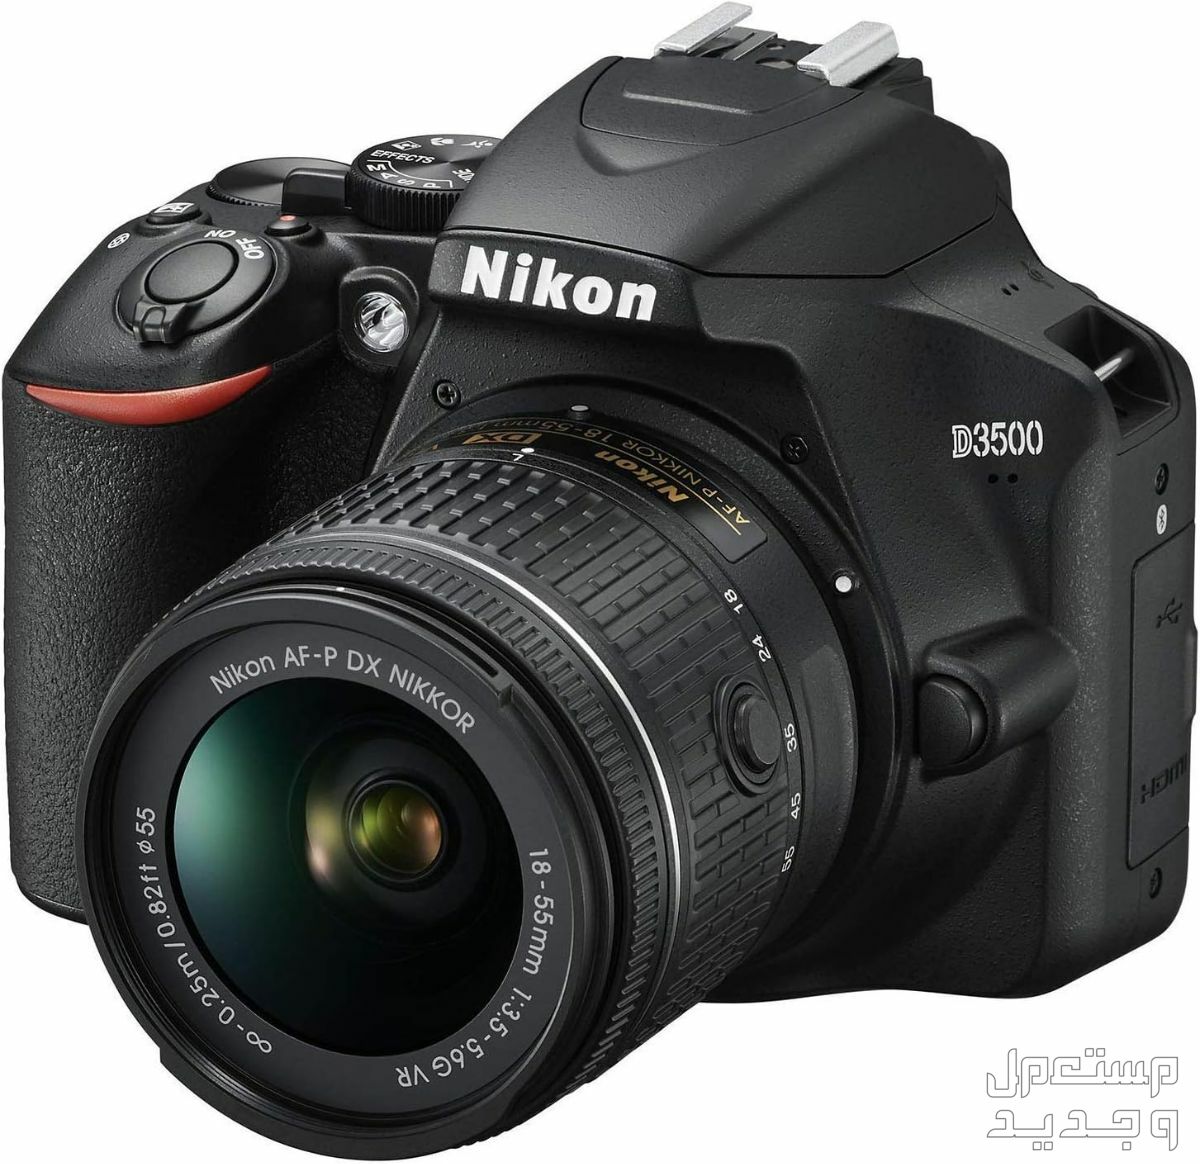 10 كاميرات تصوير ماركات عالمية بأسعار رخيصة في لبنان مميزات كاميرا Nikon D3500